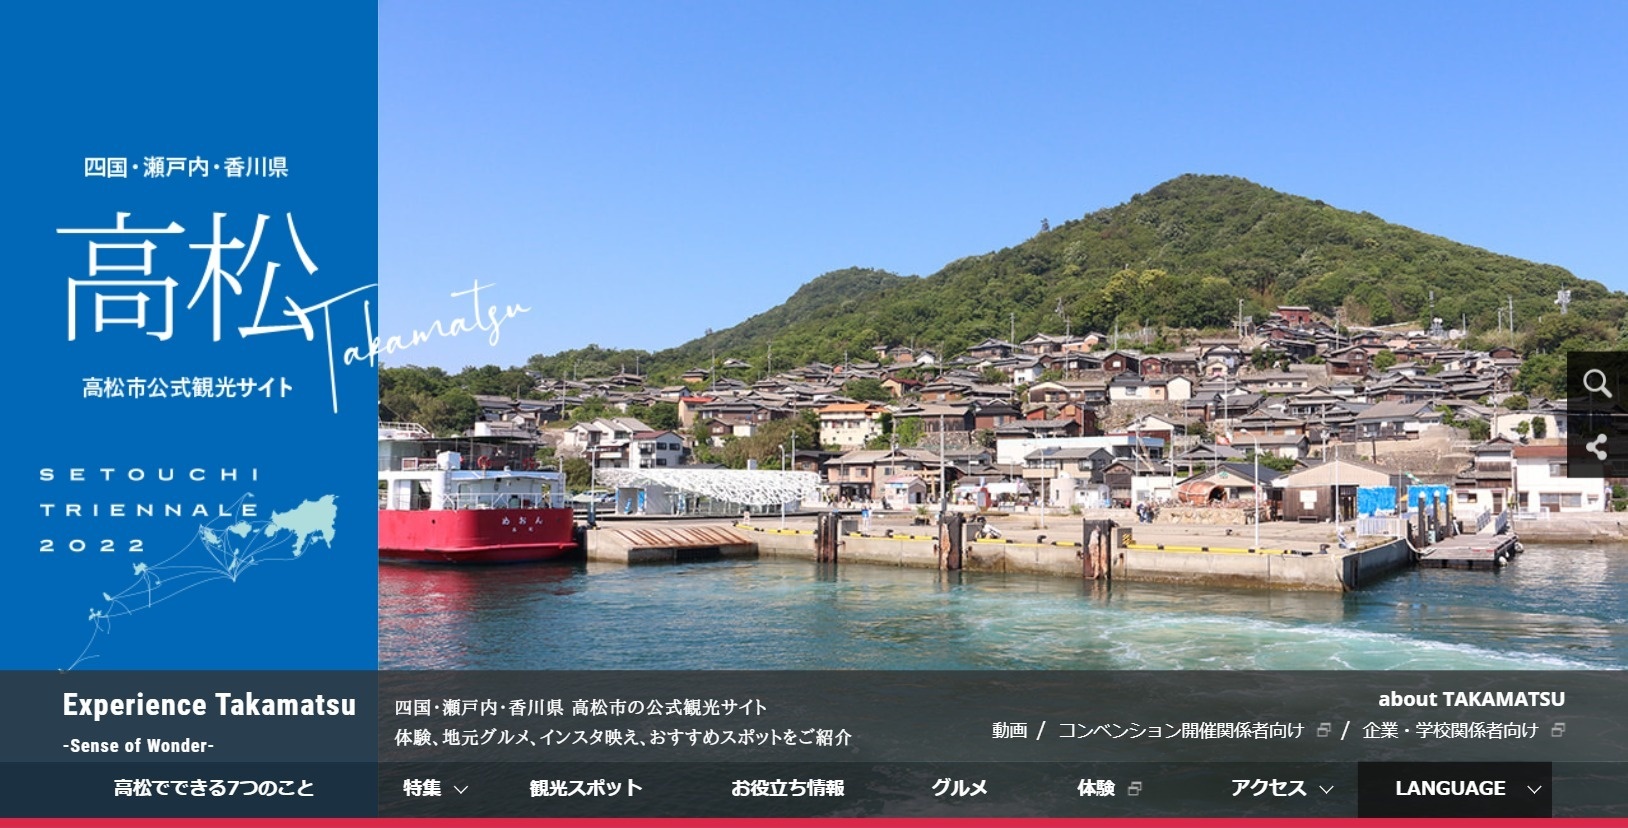 高松市公式観光サイト「エクスペリエンス高松」瀬戸芸バージョンのメインビジュアル